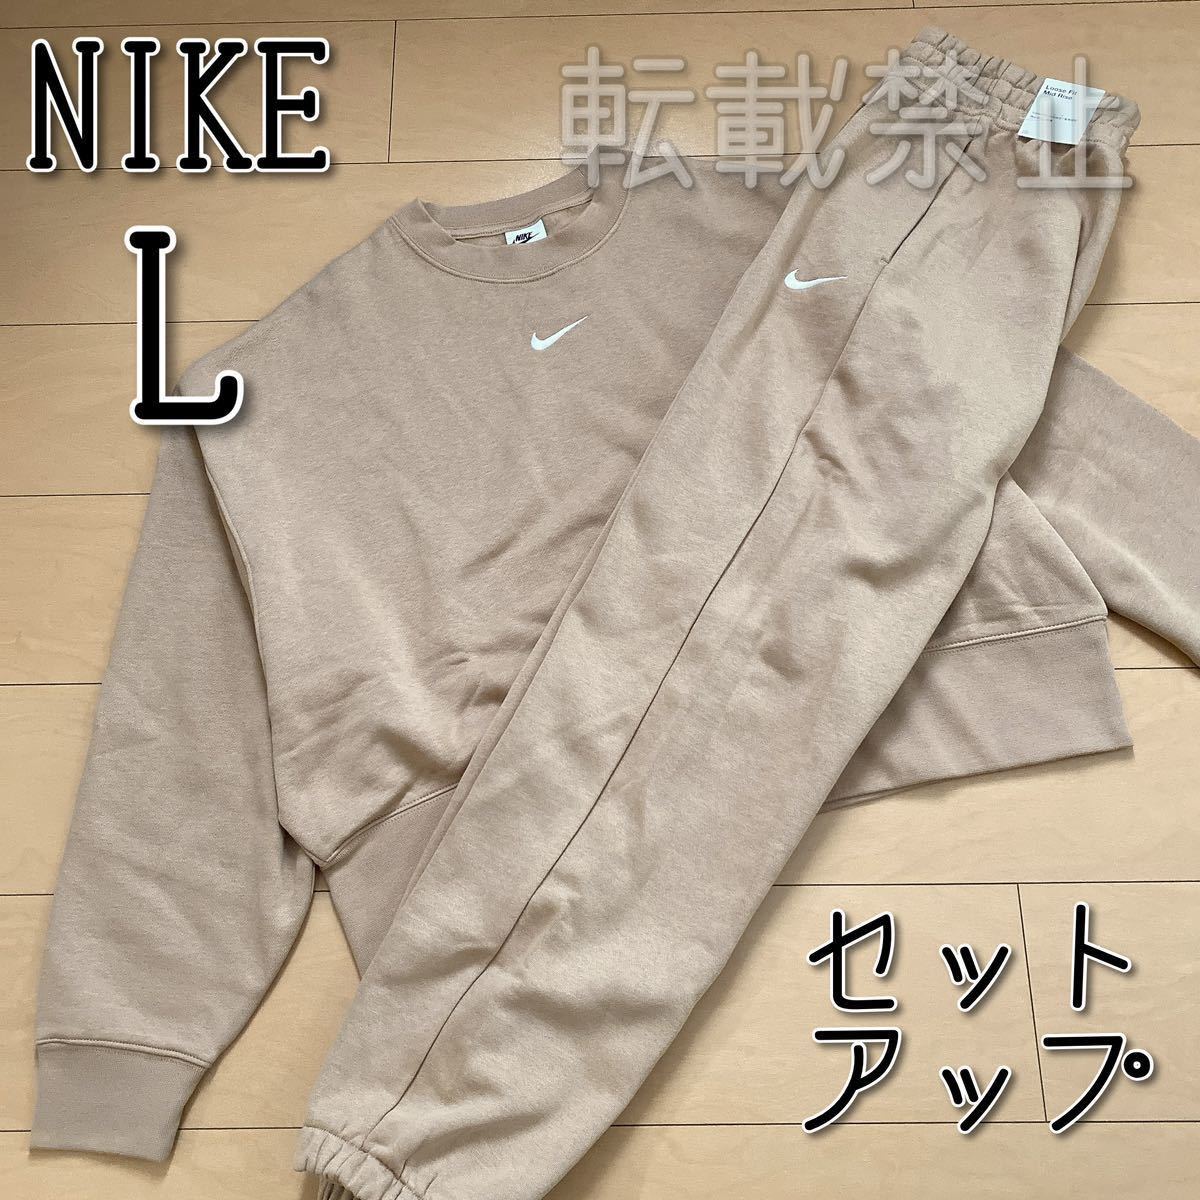 [ новый товар ]NIKE Nike NSW флис обратная сторона ворсистый верх и низ выставить L размер 